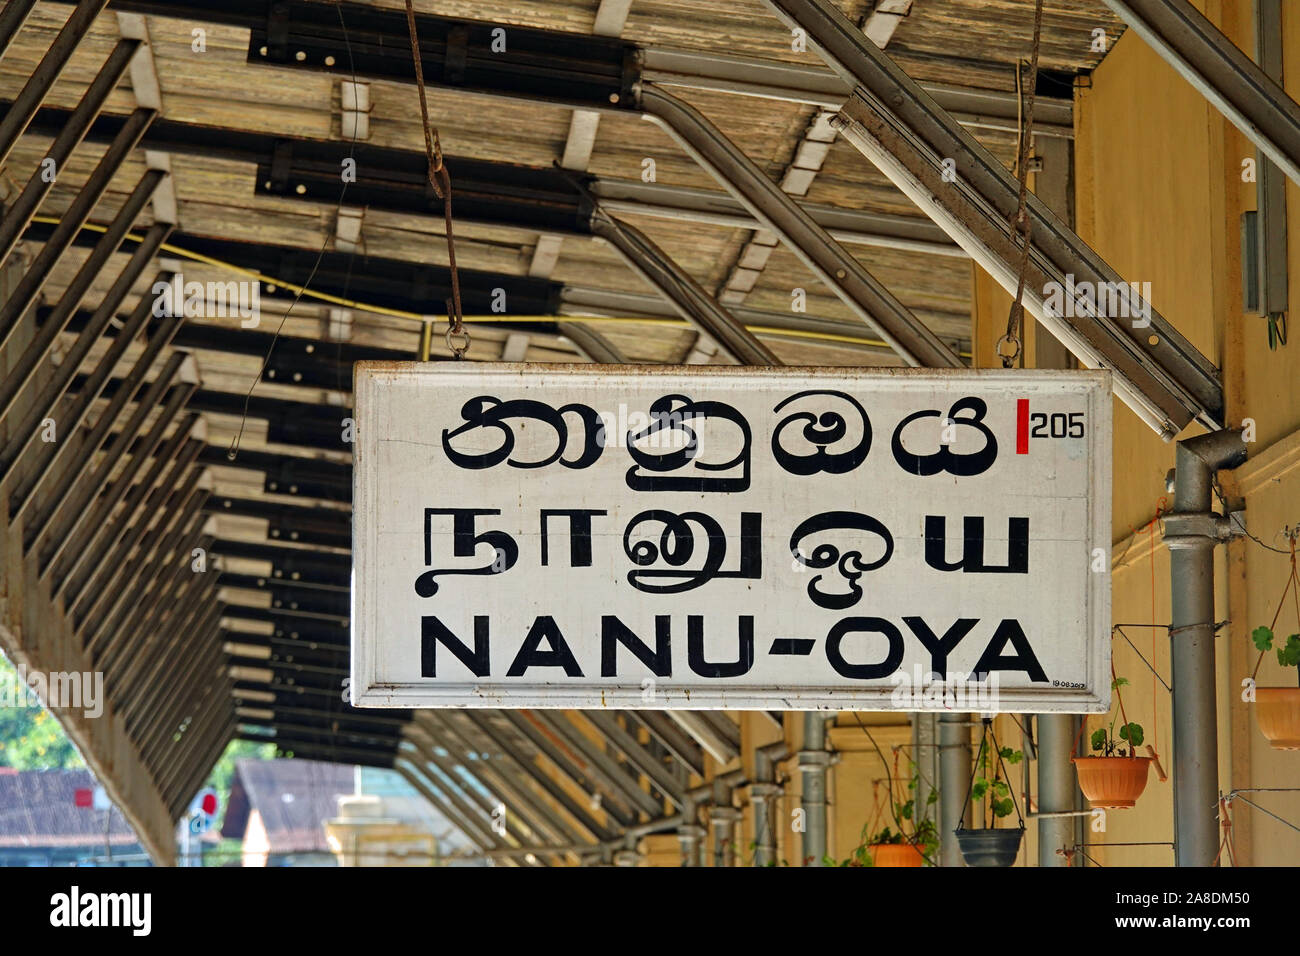 Nanu-Oya Train Station, Nuwara Eliya District, Sri Lanka Stock Photo